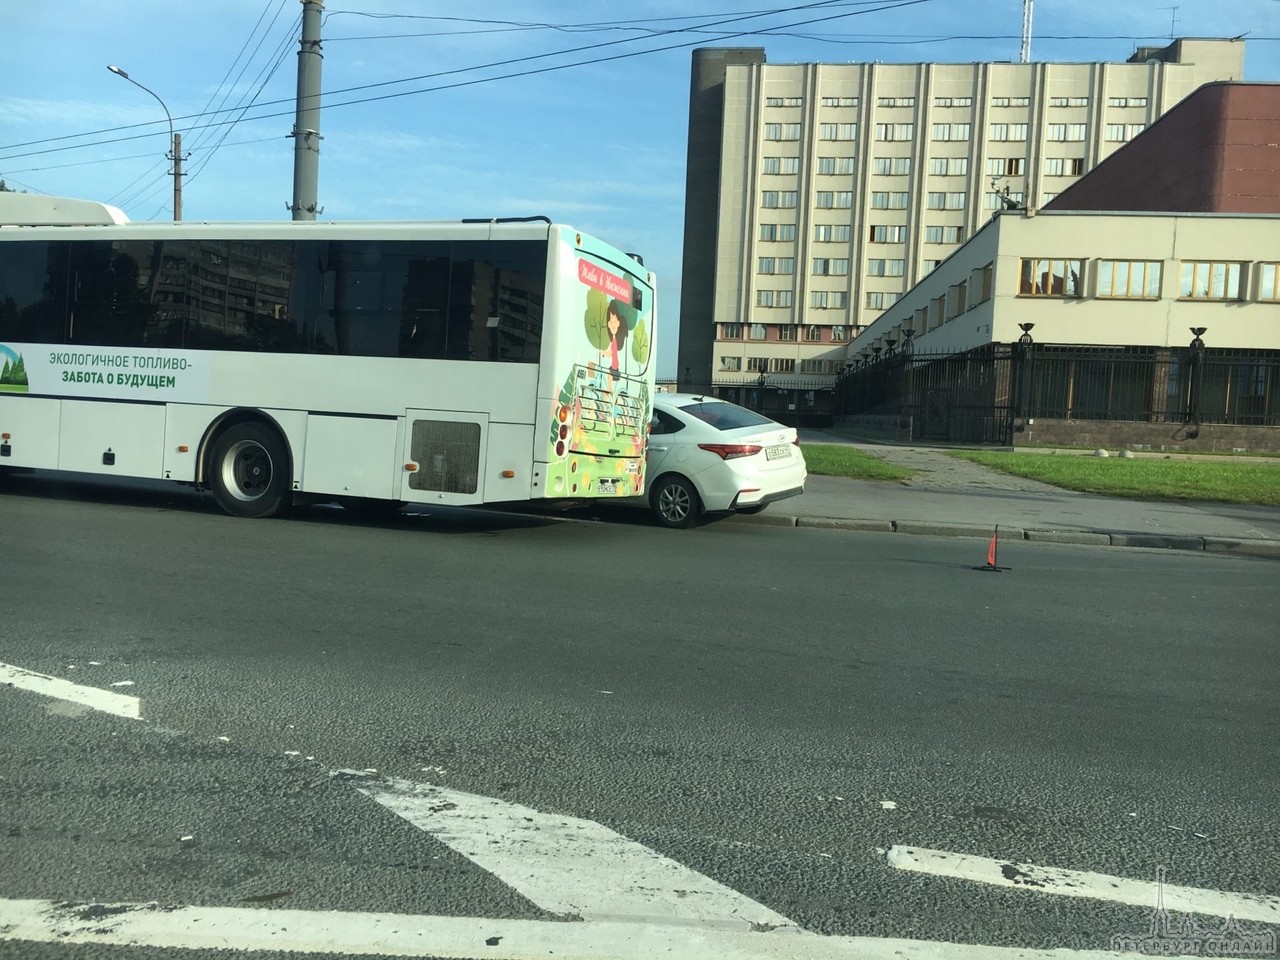 Перед круговым шоссе Революции и проспекта Энергетиков автобус потеснил Solaris